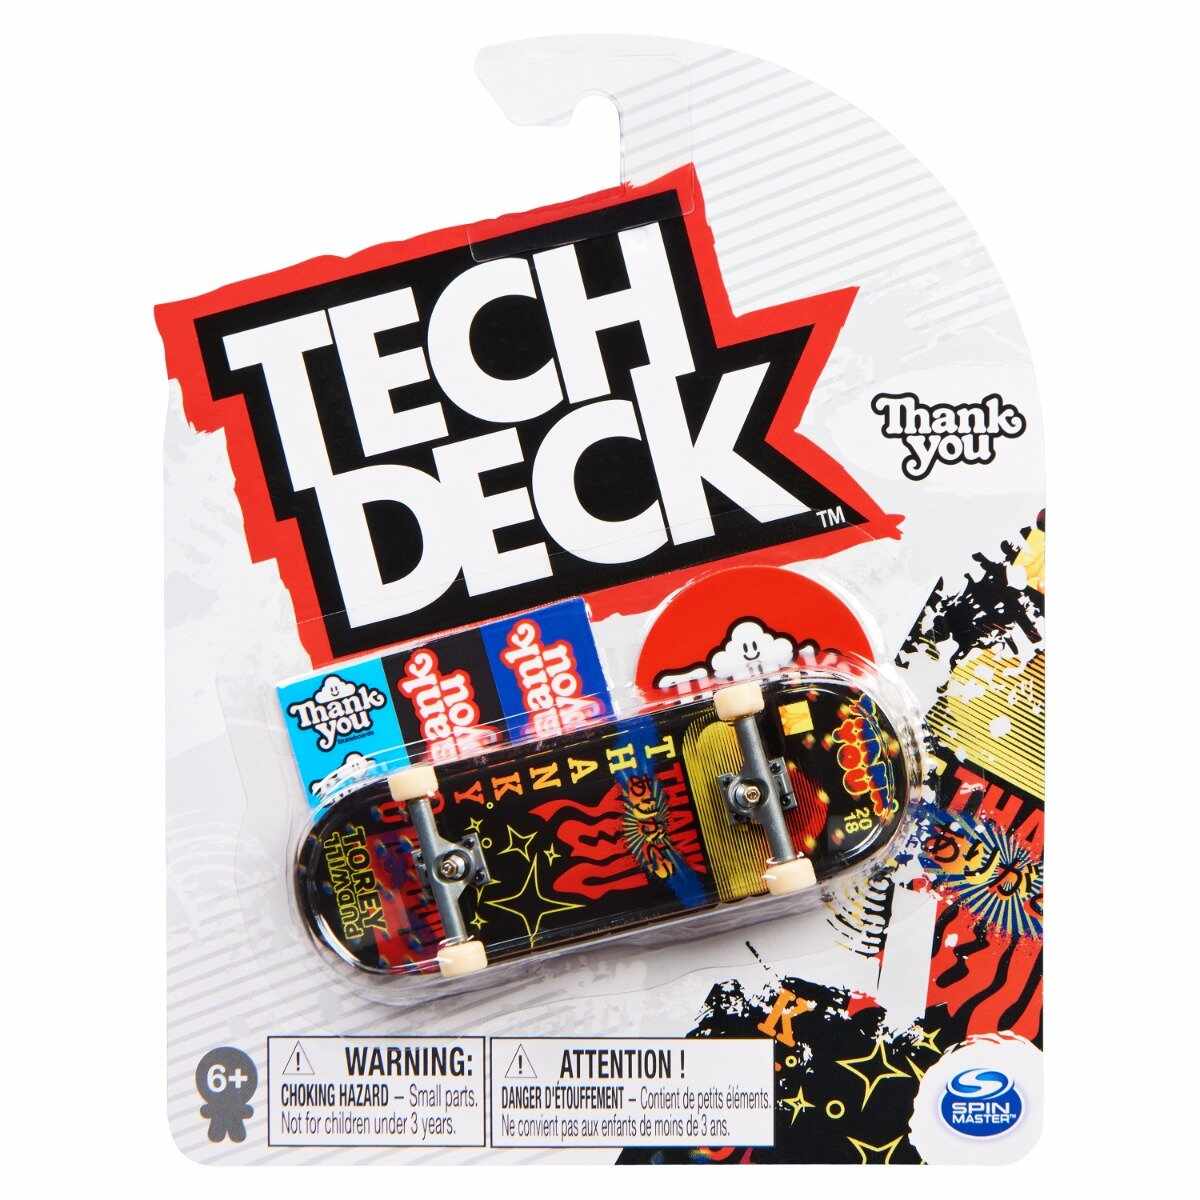 Mini placa skateboard Tech Deck, Thank You, 20141351